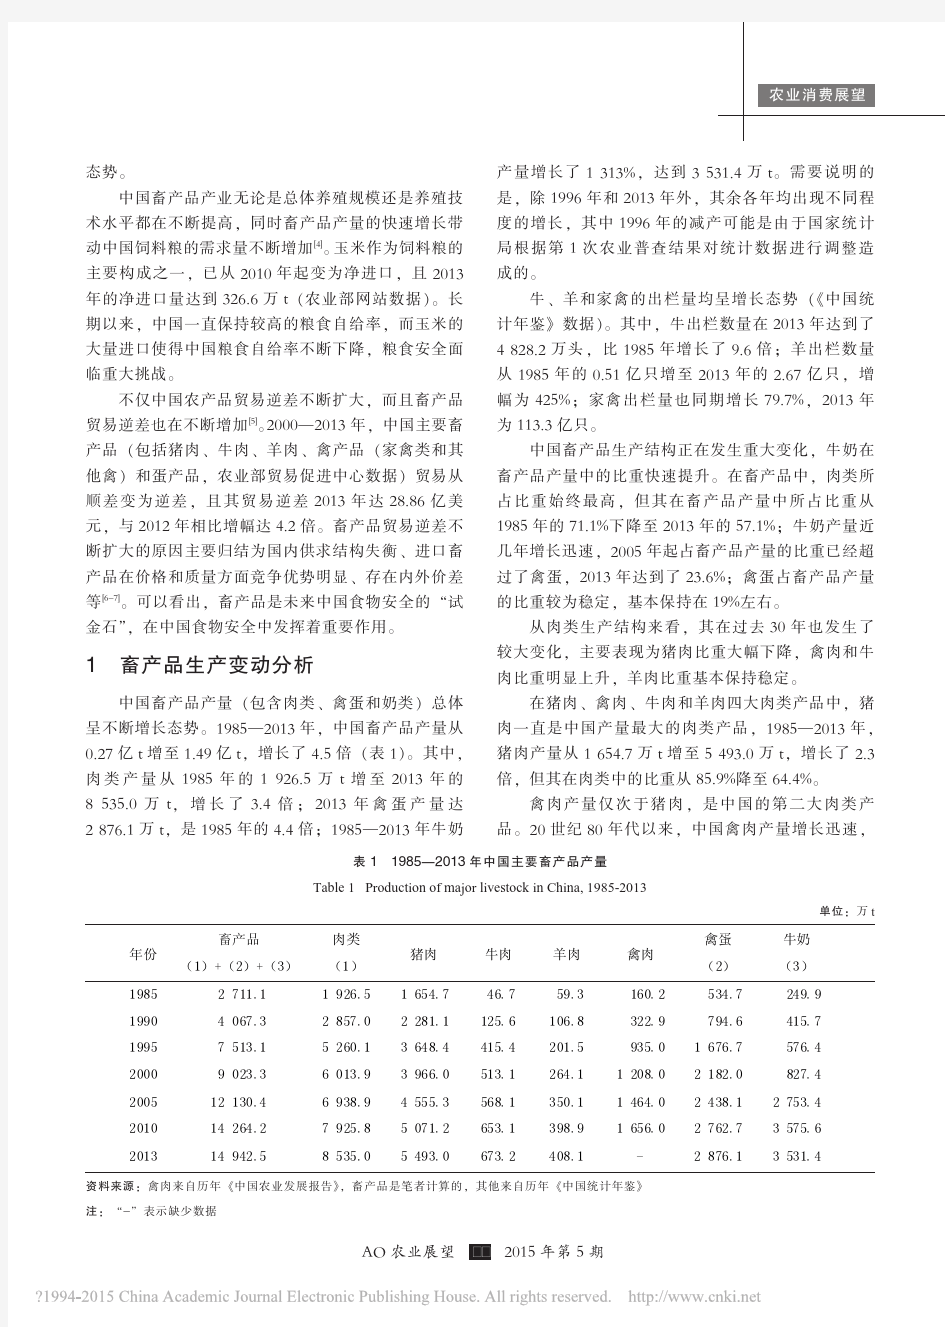 中国畜产品供求变动分析及展望